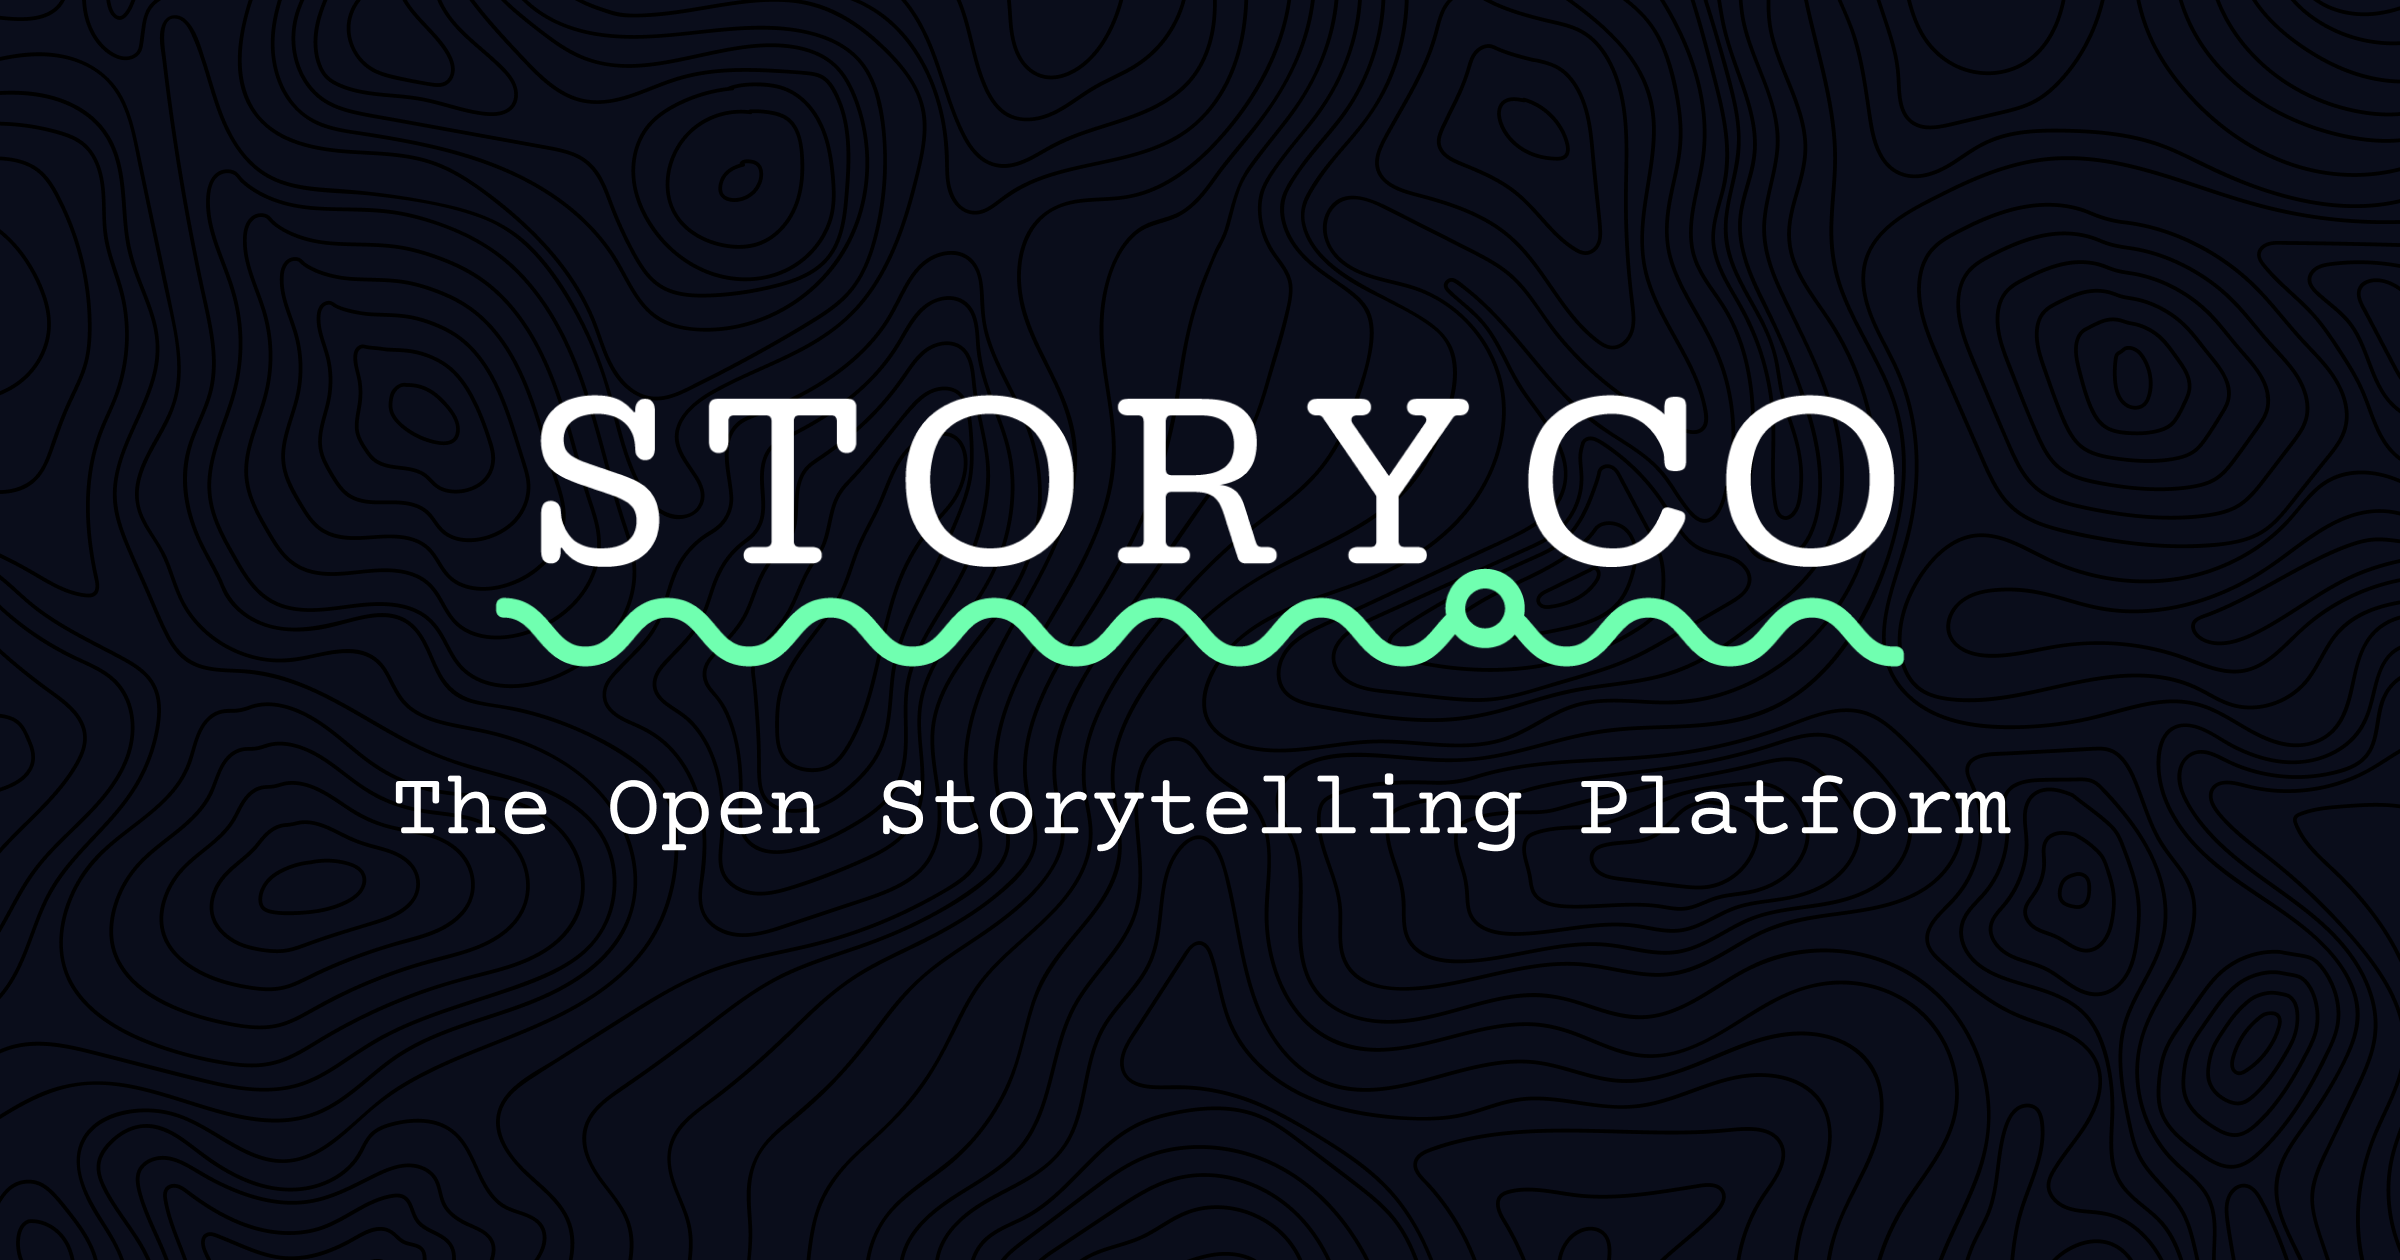 StoryCo